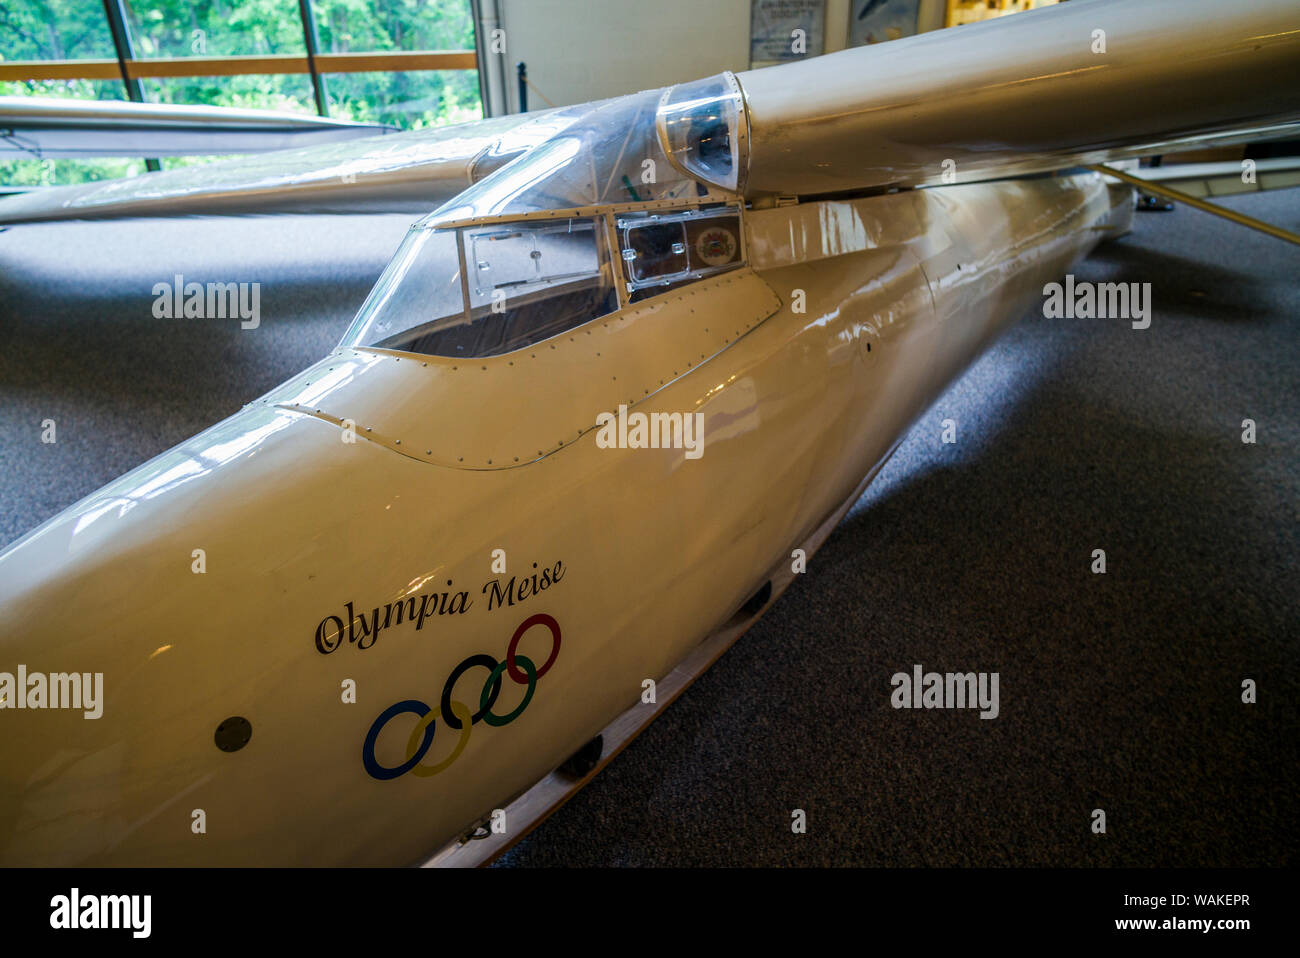 USA, New York, Elmira. Musée national de planeur allemand 1938, DFS Olympia Meise glider (usage éditorial uniquement) Banque D'Images